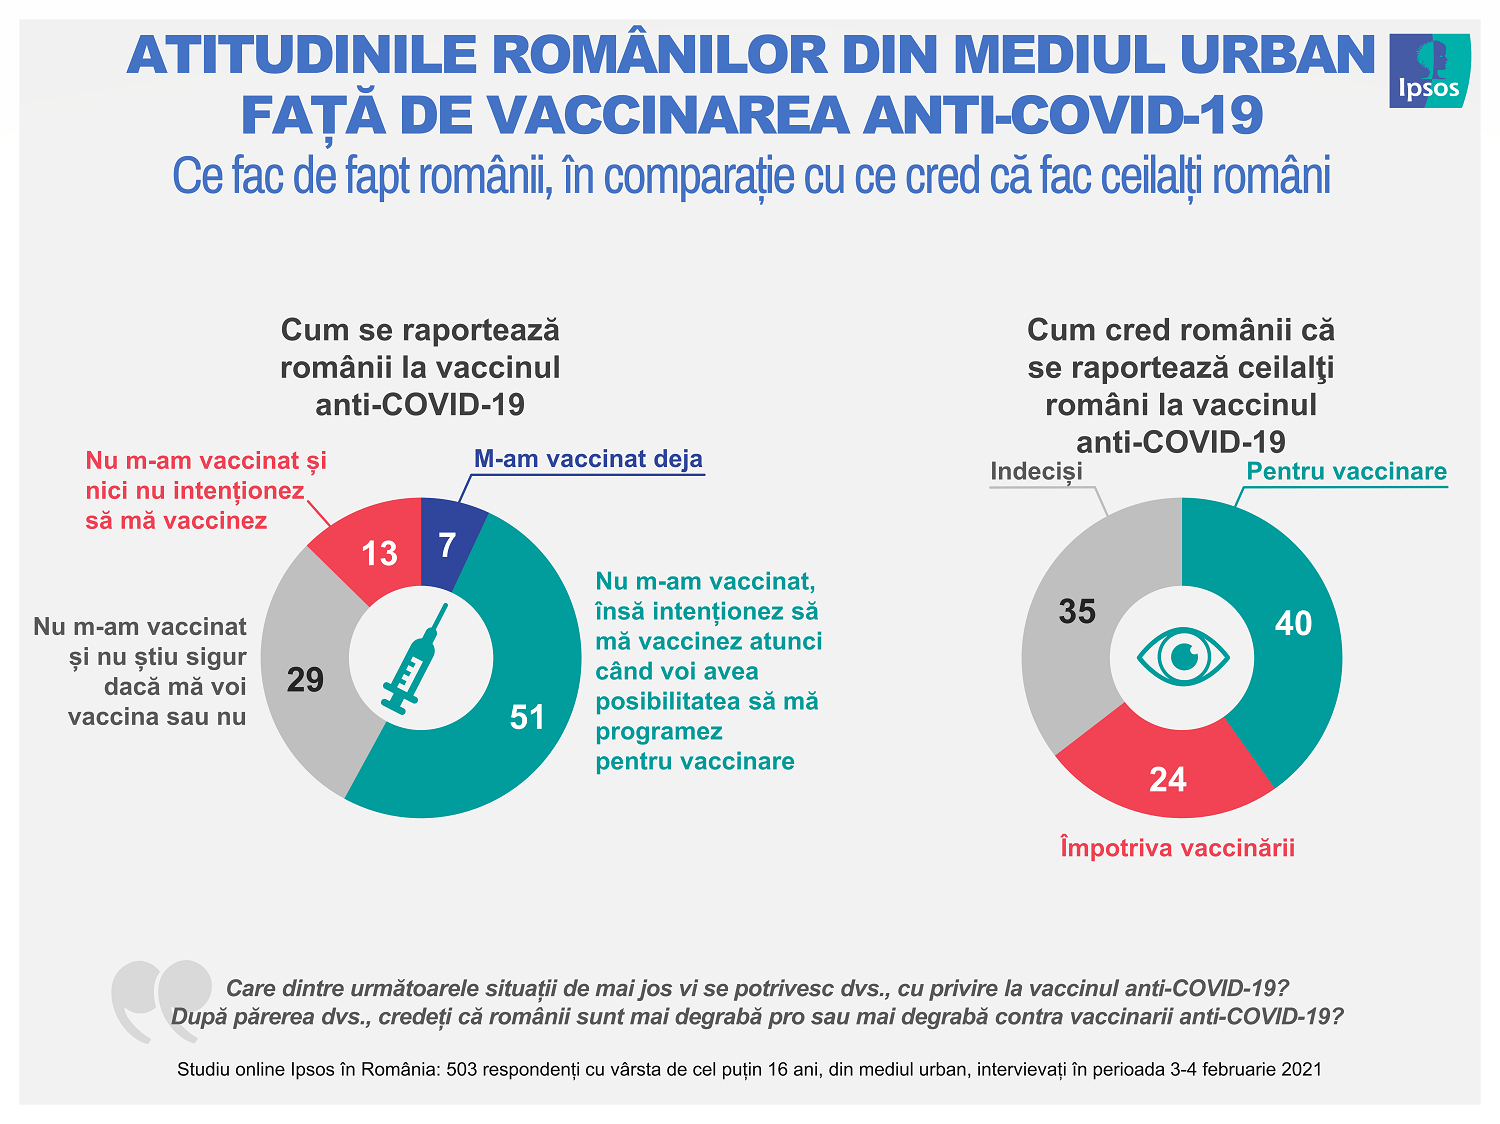 Crește intenția de vaccinare împotriva COVID-19 în rândul românilor